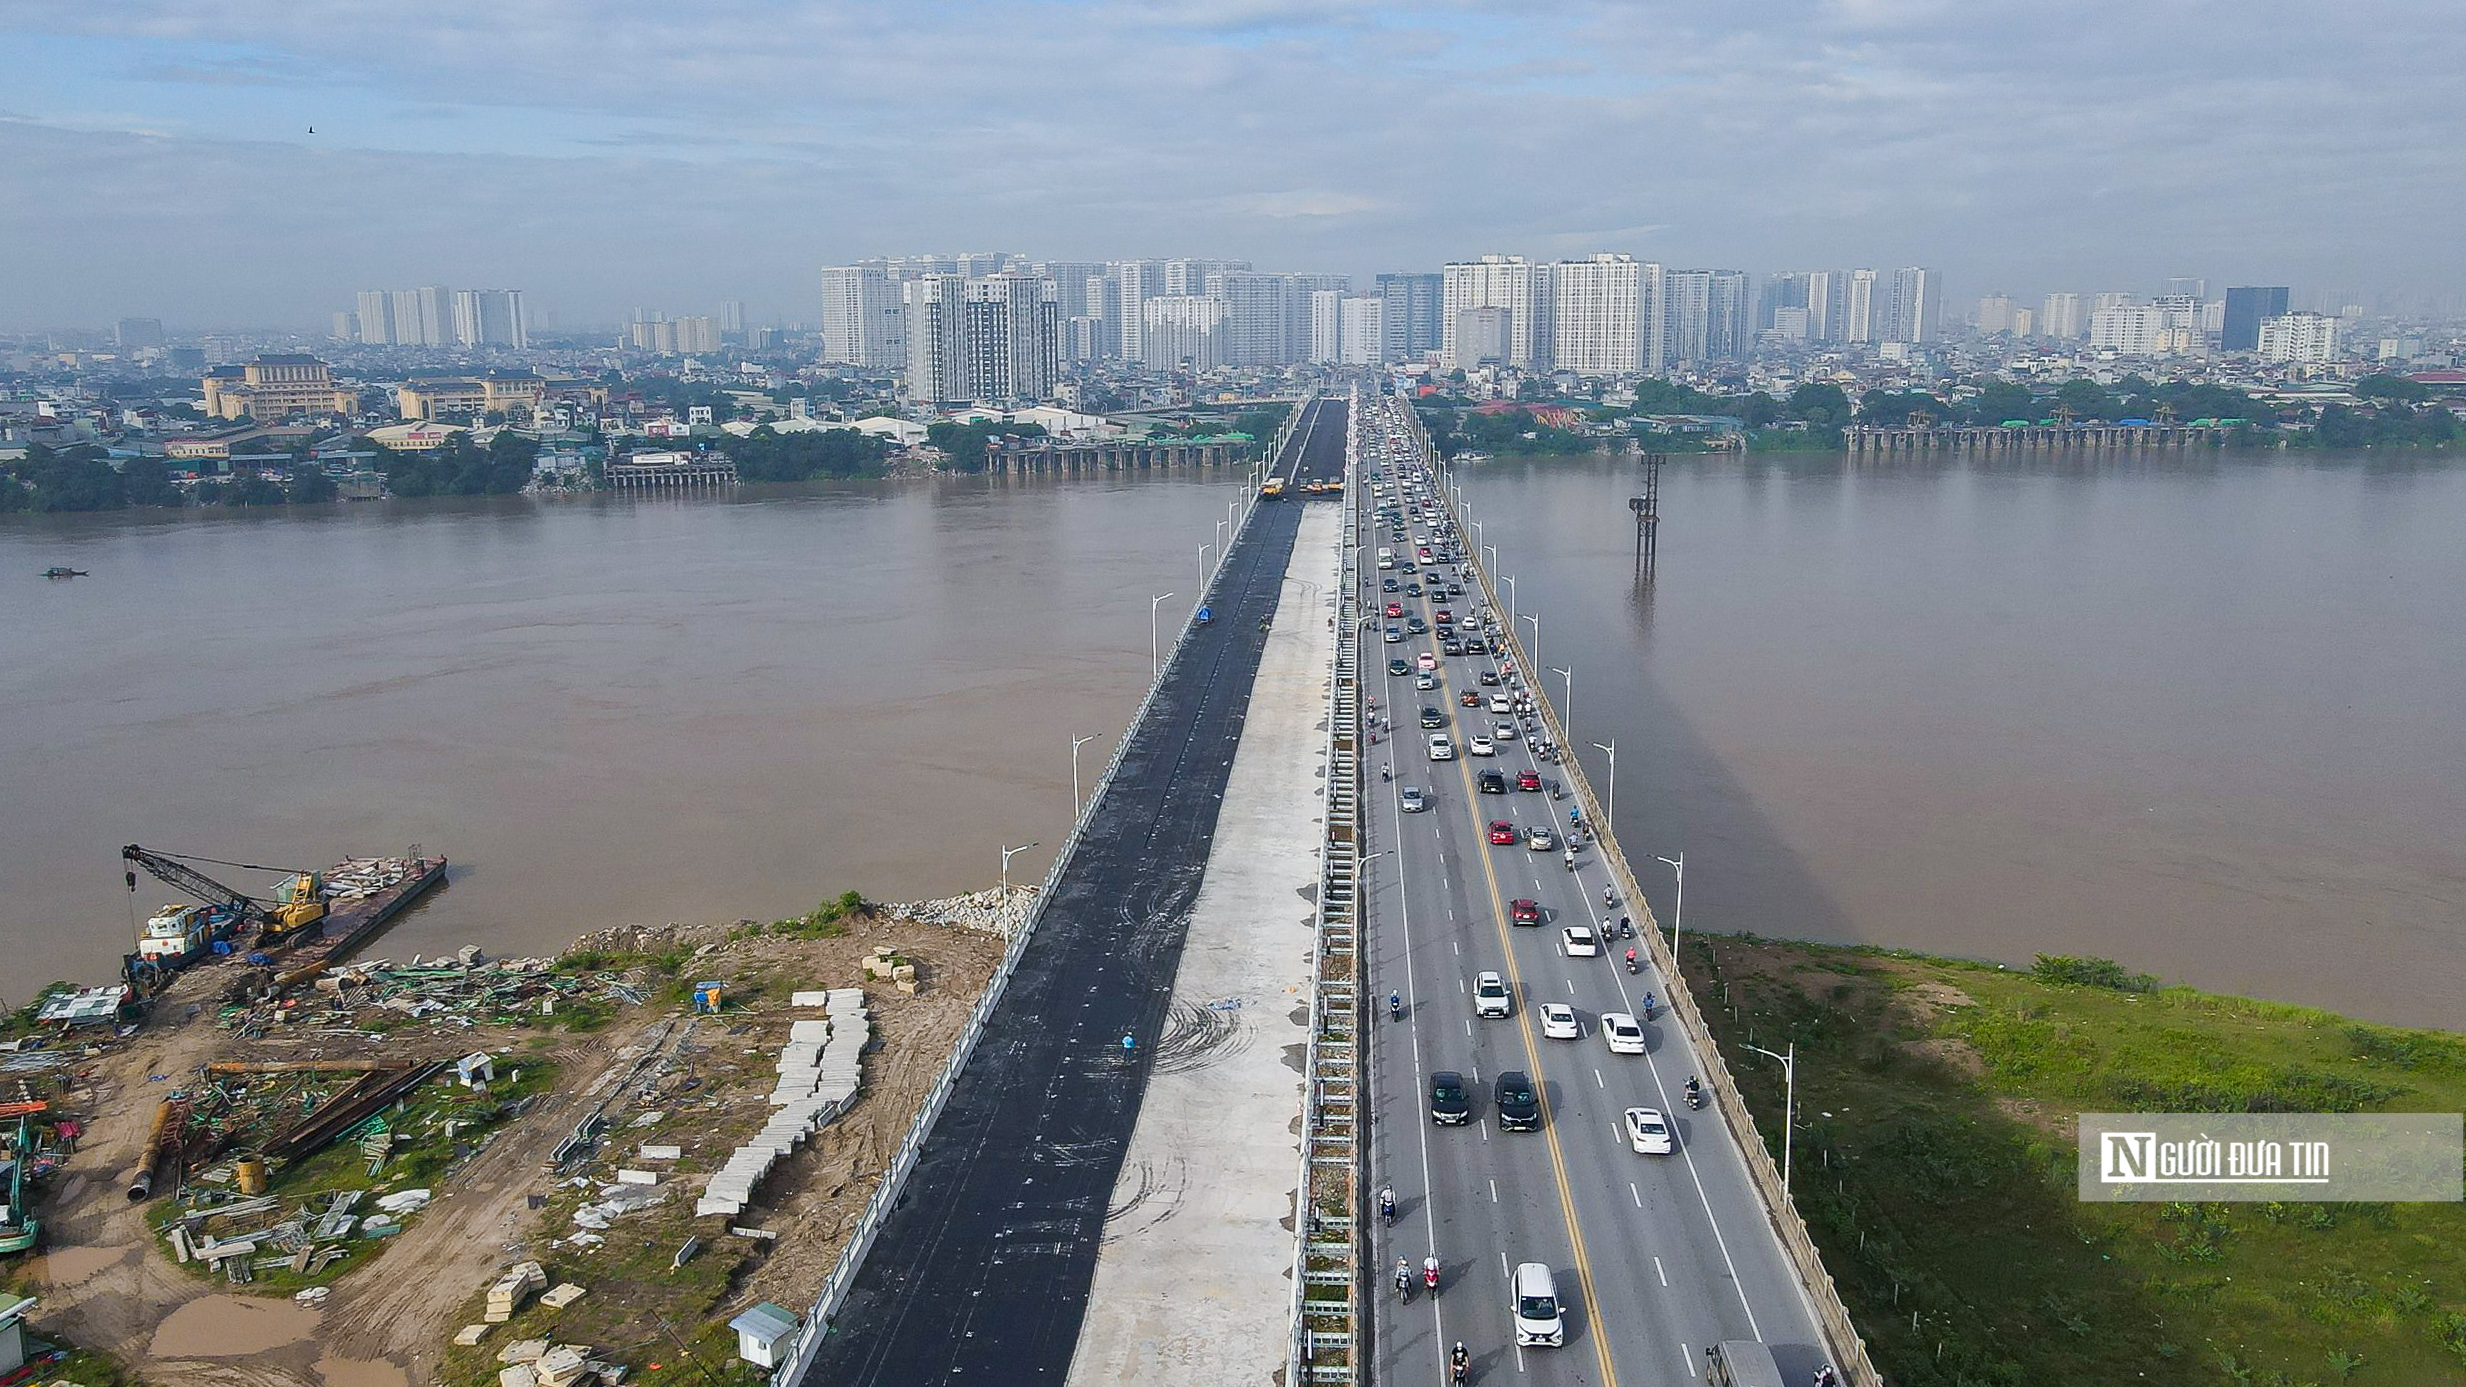 Sự kiện - Diện mạo cây cầu vượt sông Hồng 2.500 tỷ đồng sắp thông xe (Hình 12).